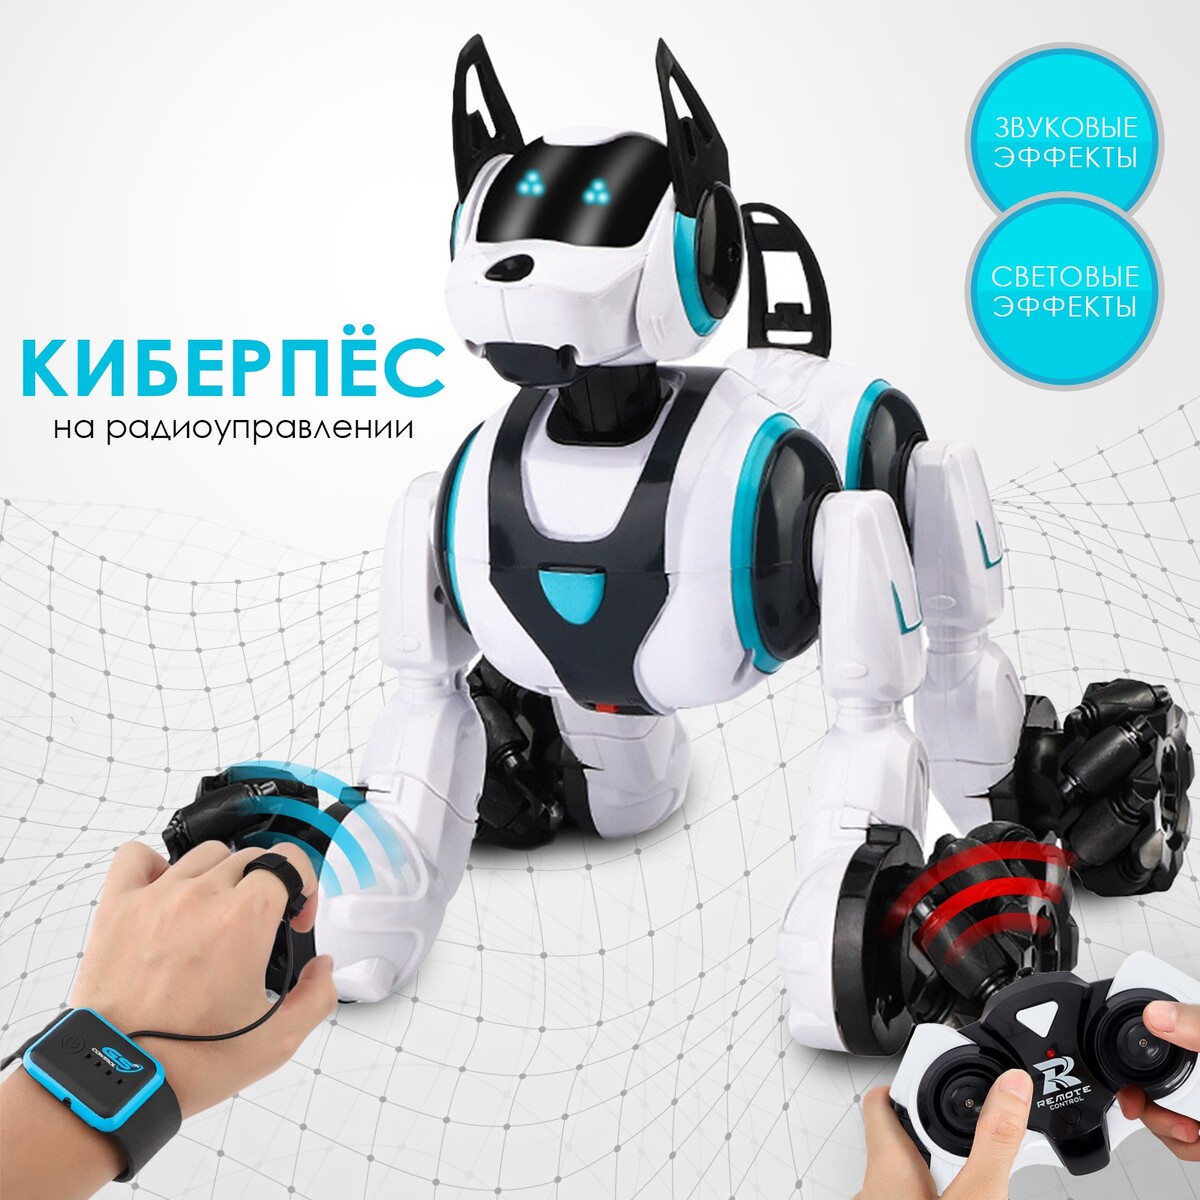 Робот собака stunt, на пульте управления, интерактивный: звук, свет, на аккумуляторе, белый я колдую белый свет